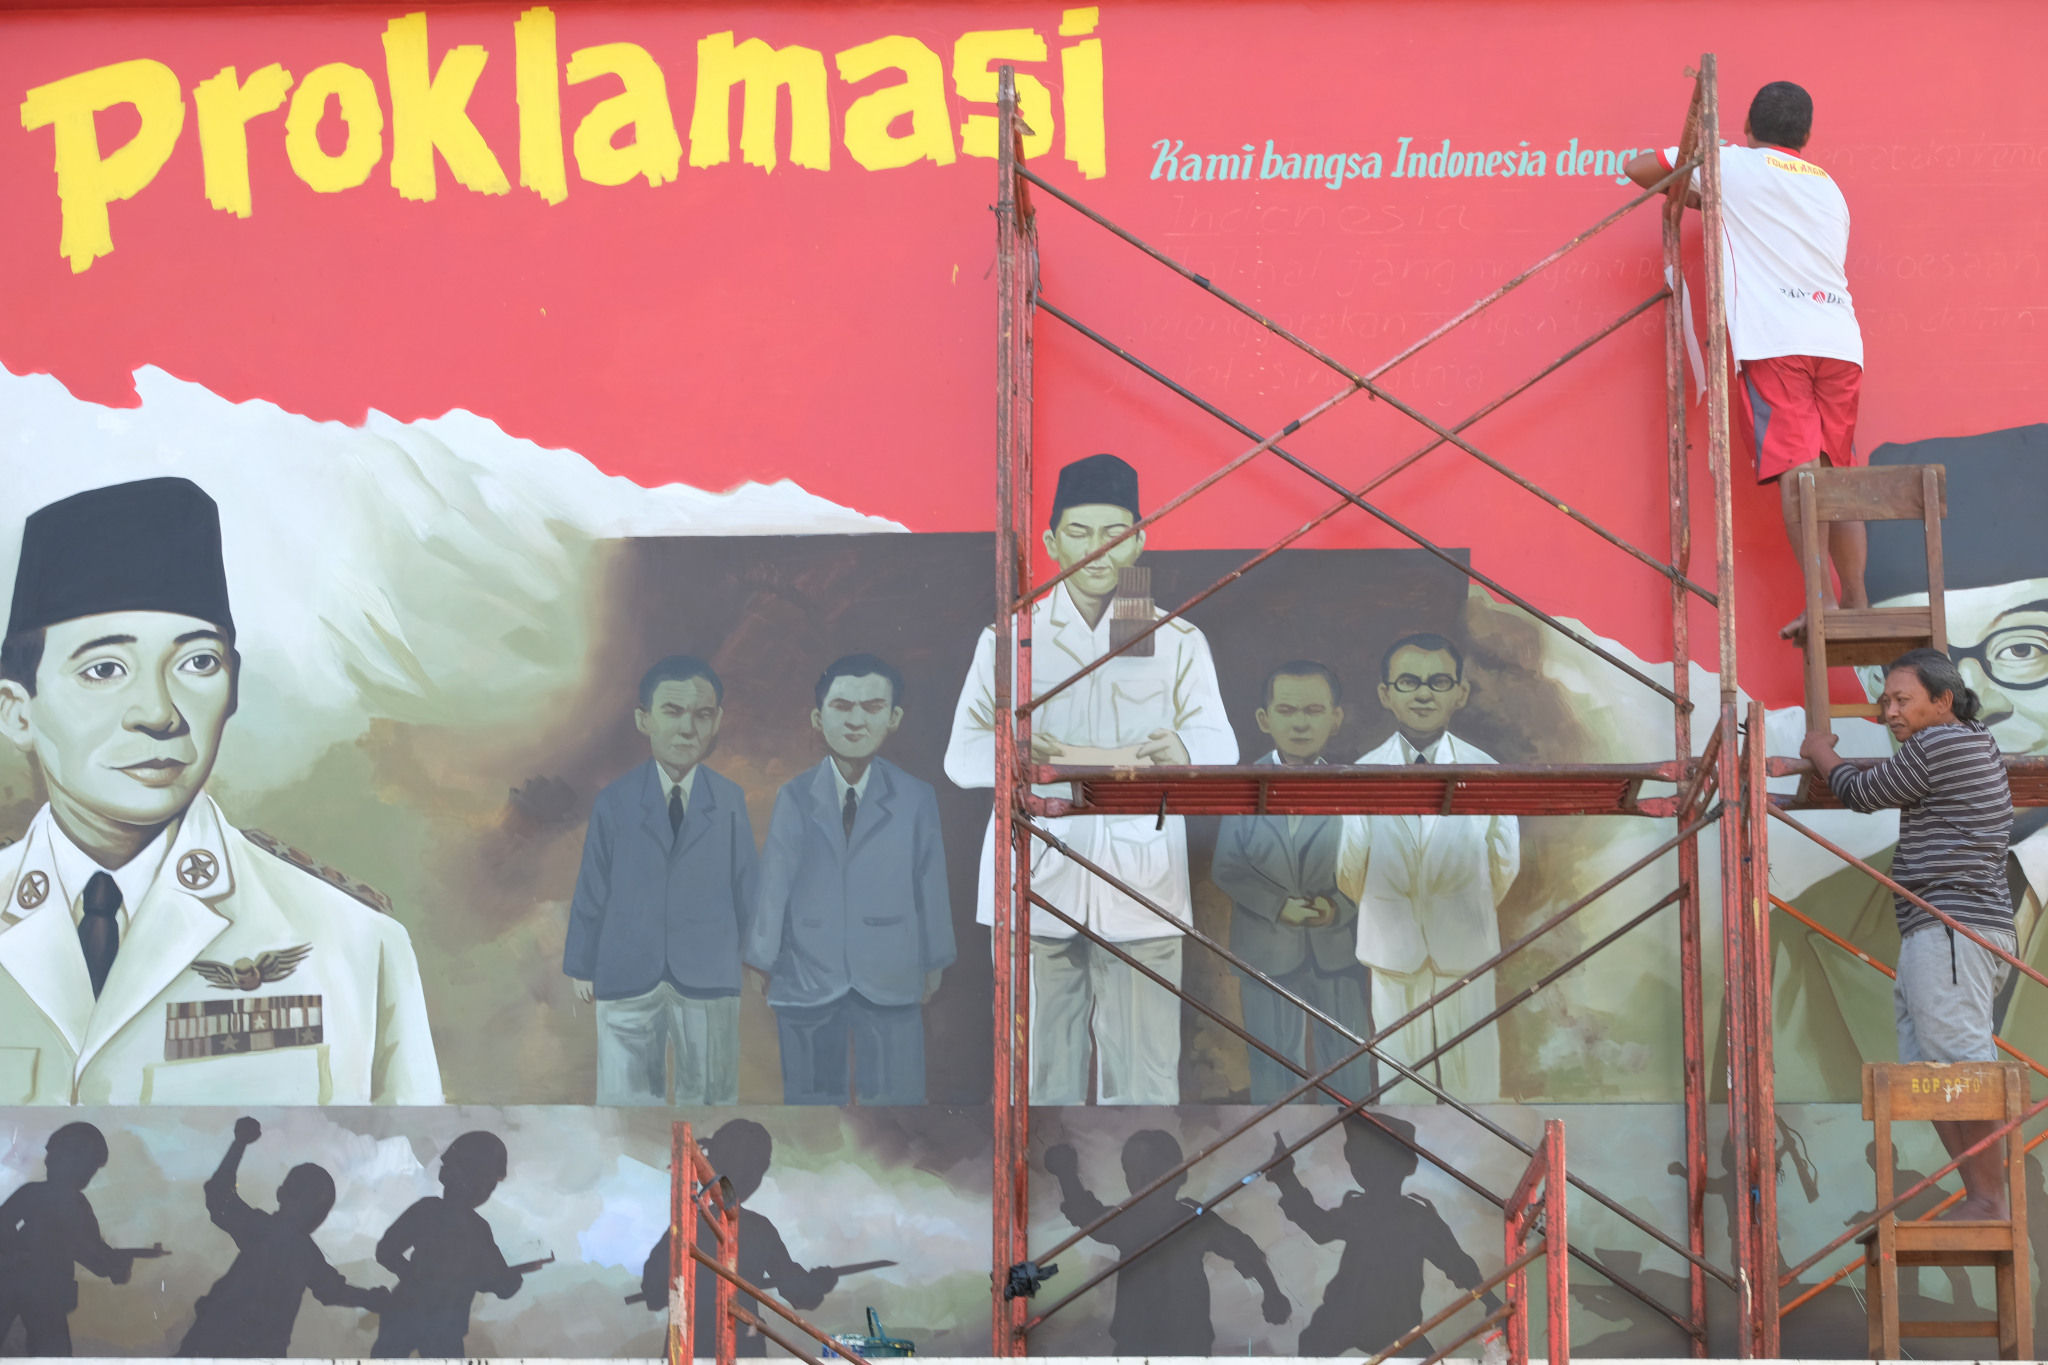 <p>Seniman mengerjakan pembuatan mural bertemakan Proklamasi di Sekolah Dasar Negeri (SDN) Pondok Aren 02, Tangerang Selatan, Banten, Rabu, 22 Juli 2020. Mural tersebut dibuat dalam rangka menyambut  HUT  ke-75 RI tahun ini yang mengusung tema &#8220;Indonesia Maju&#8221;. Namun karena masih berada dalam situasi pandemi COVID-19, pemerintah menyerukan agar peringatan digelar secara sederhana dengan tetap menerapkan protokol kesehatan kenormalan baru. Foto: Ismail Pohan/TrenAsia</p>
